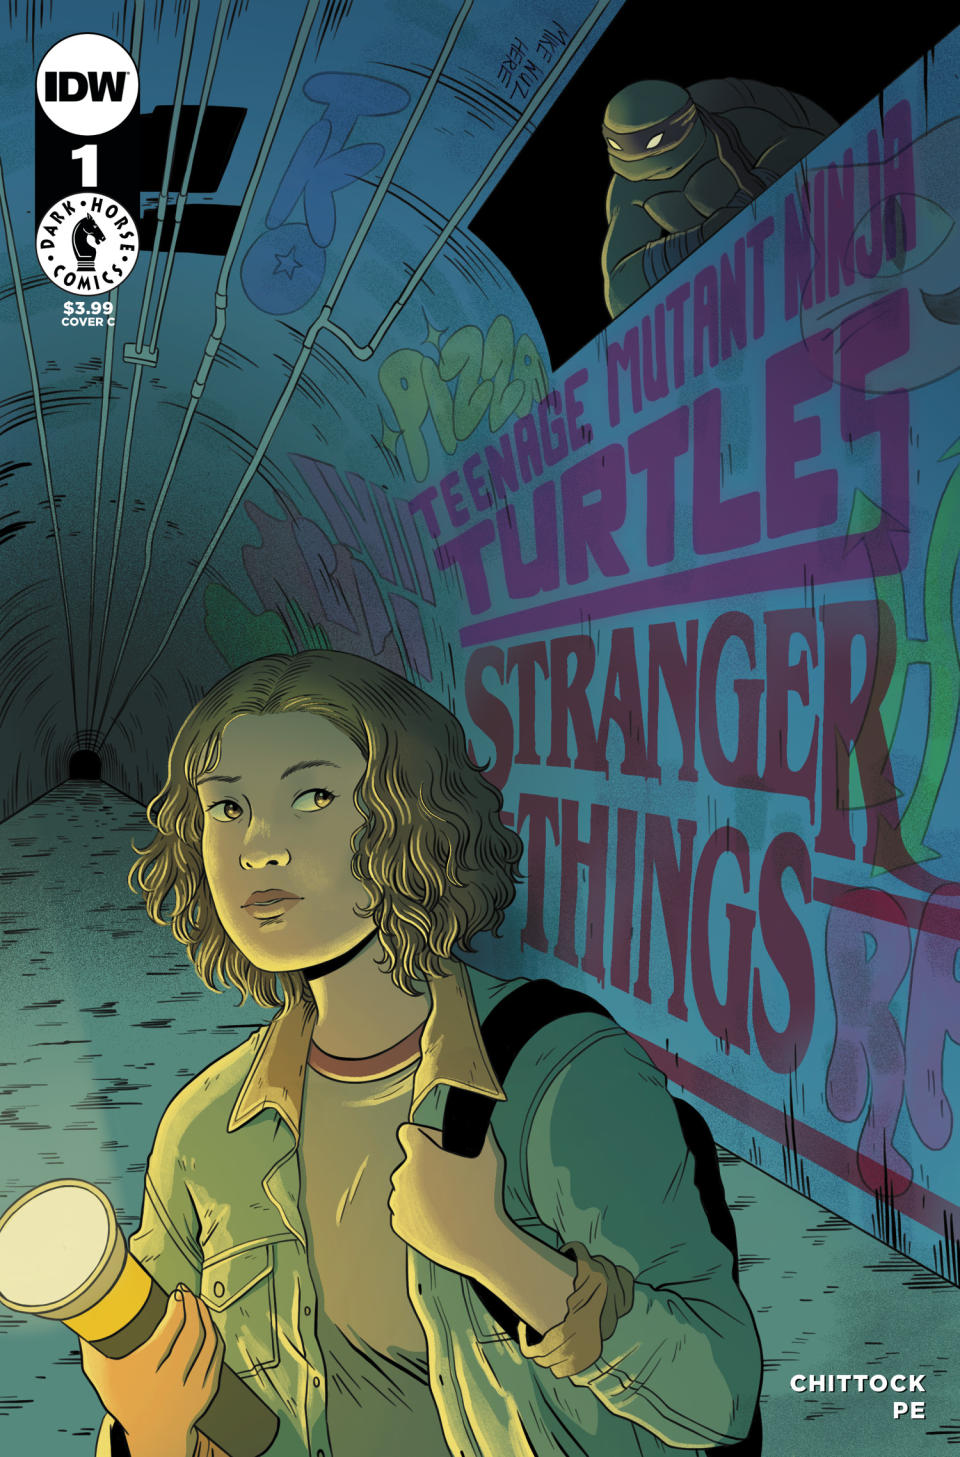 TMNT x Stranger Things #1 cover art